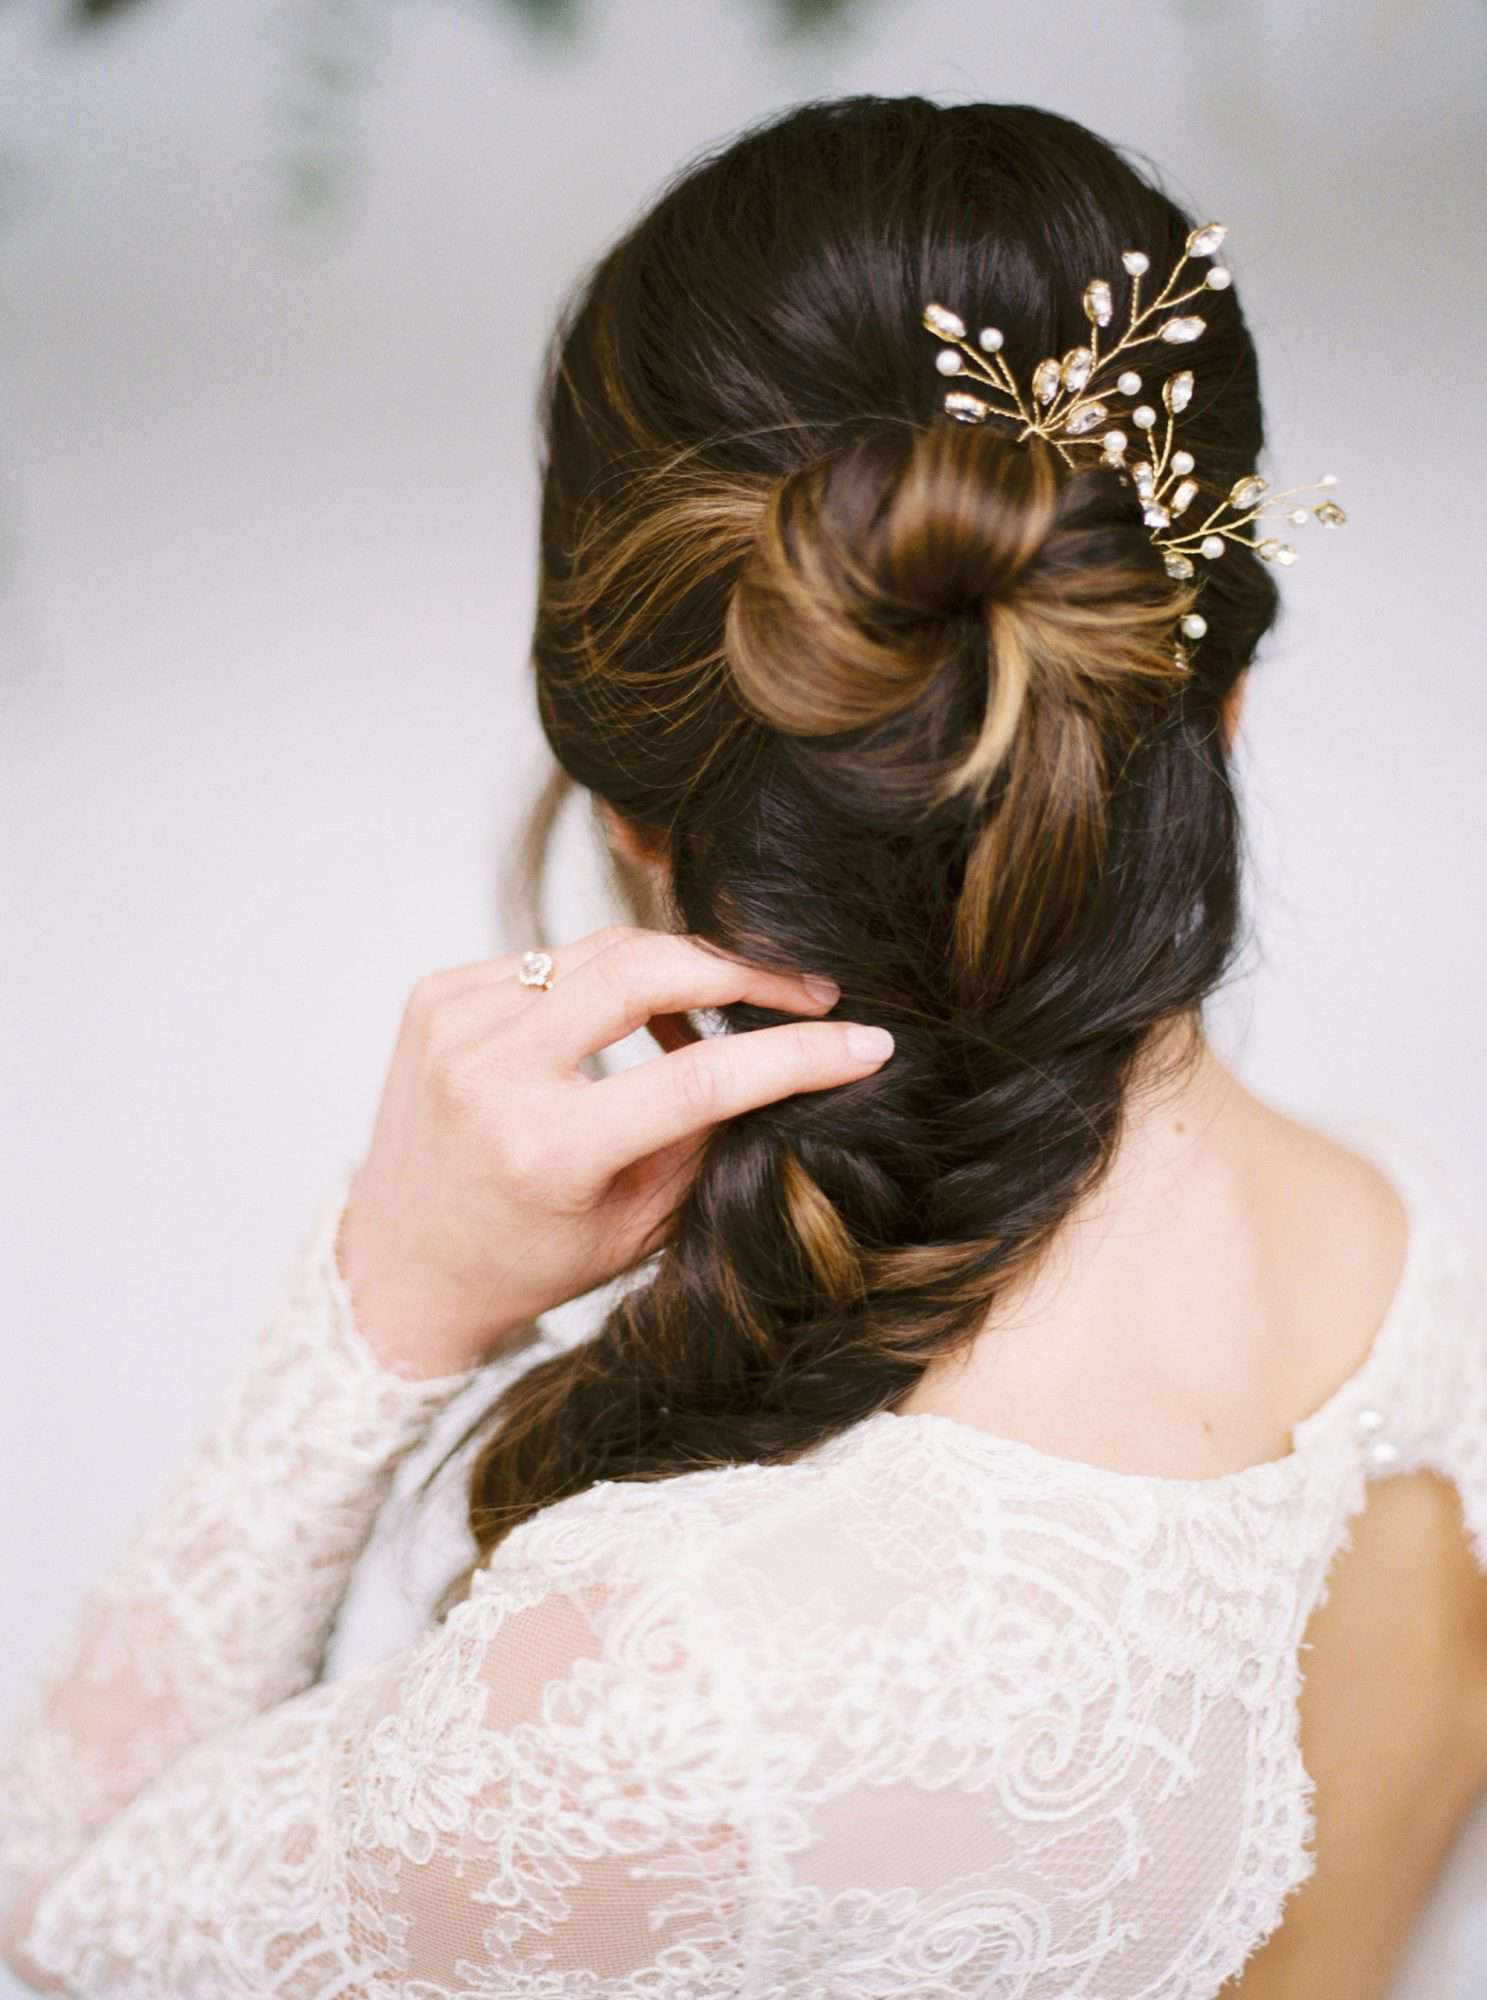 Women's Hair Barrettes  Women's Hair Slides  Women's  Hair Clips  Hair Clip Set  Floral Hair Clip  Wedding Hair Accessories